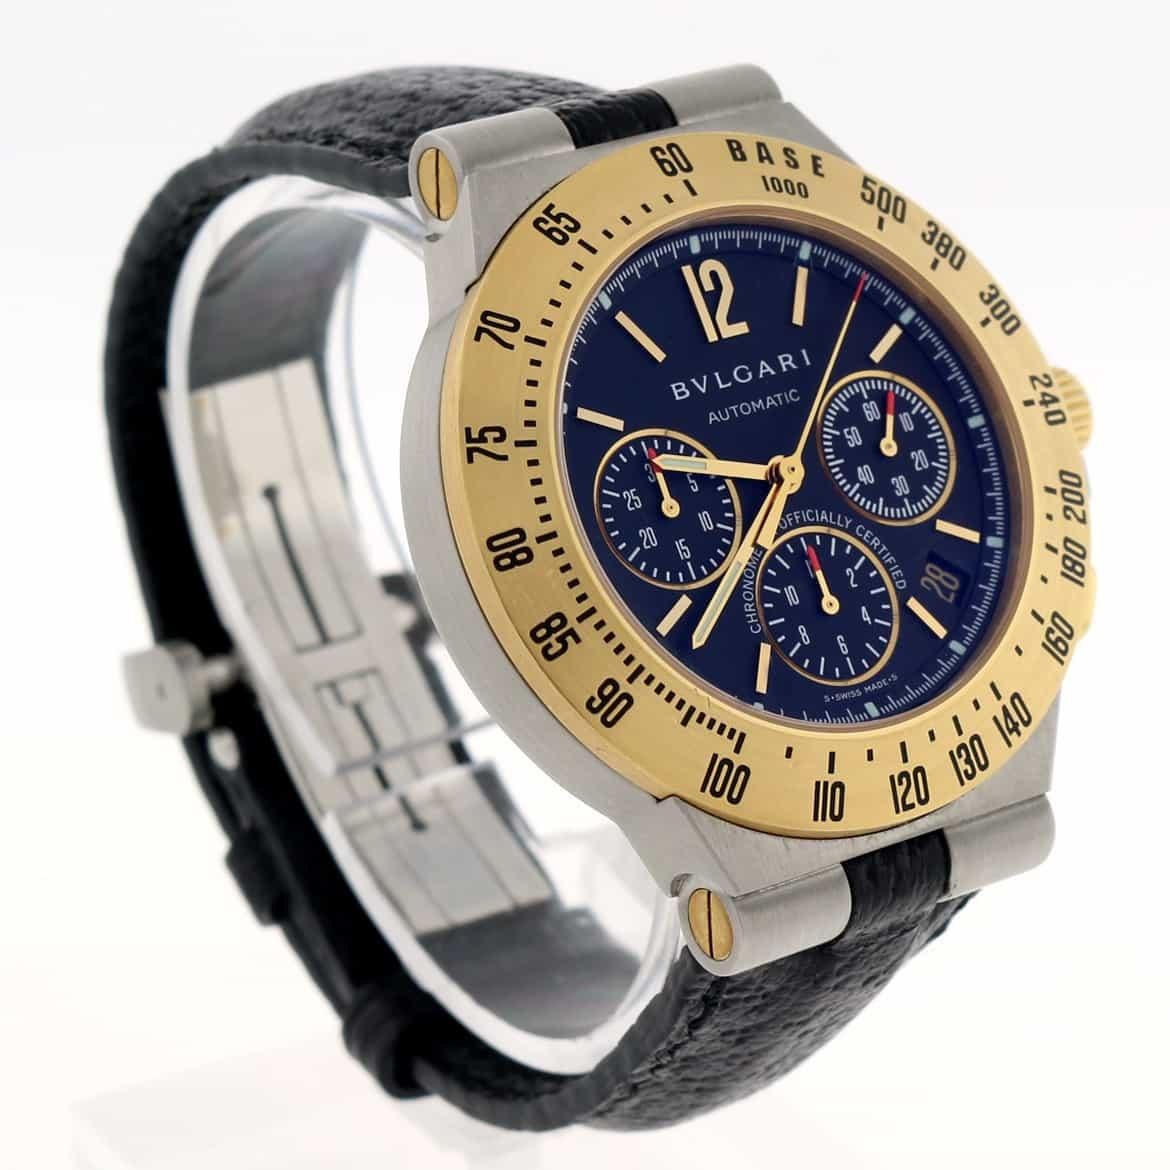 bvlgari chronograph watch price